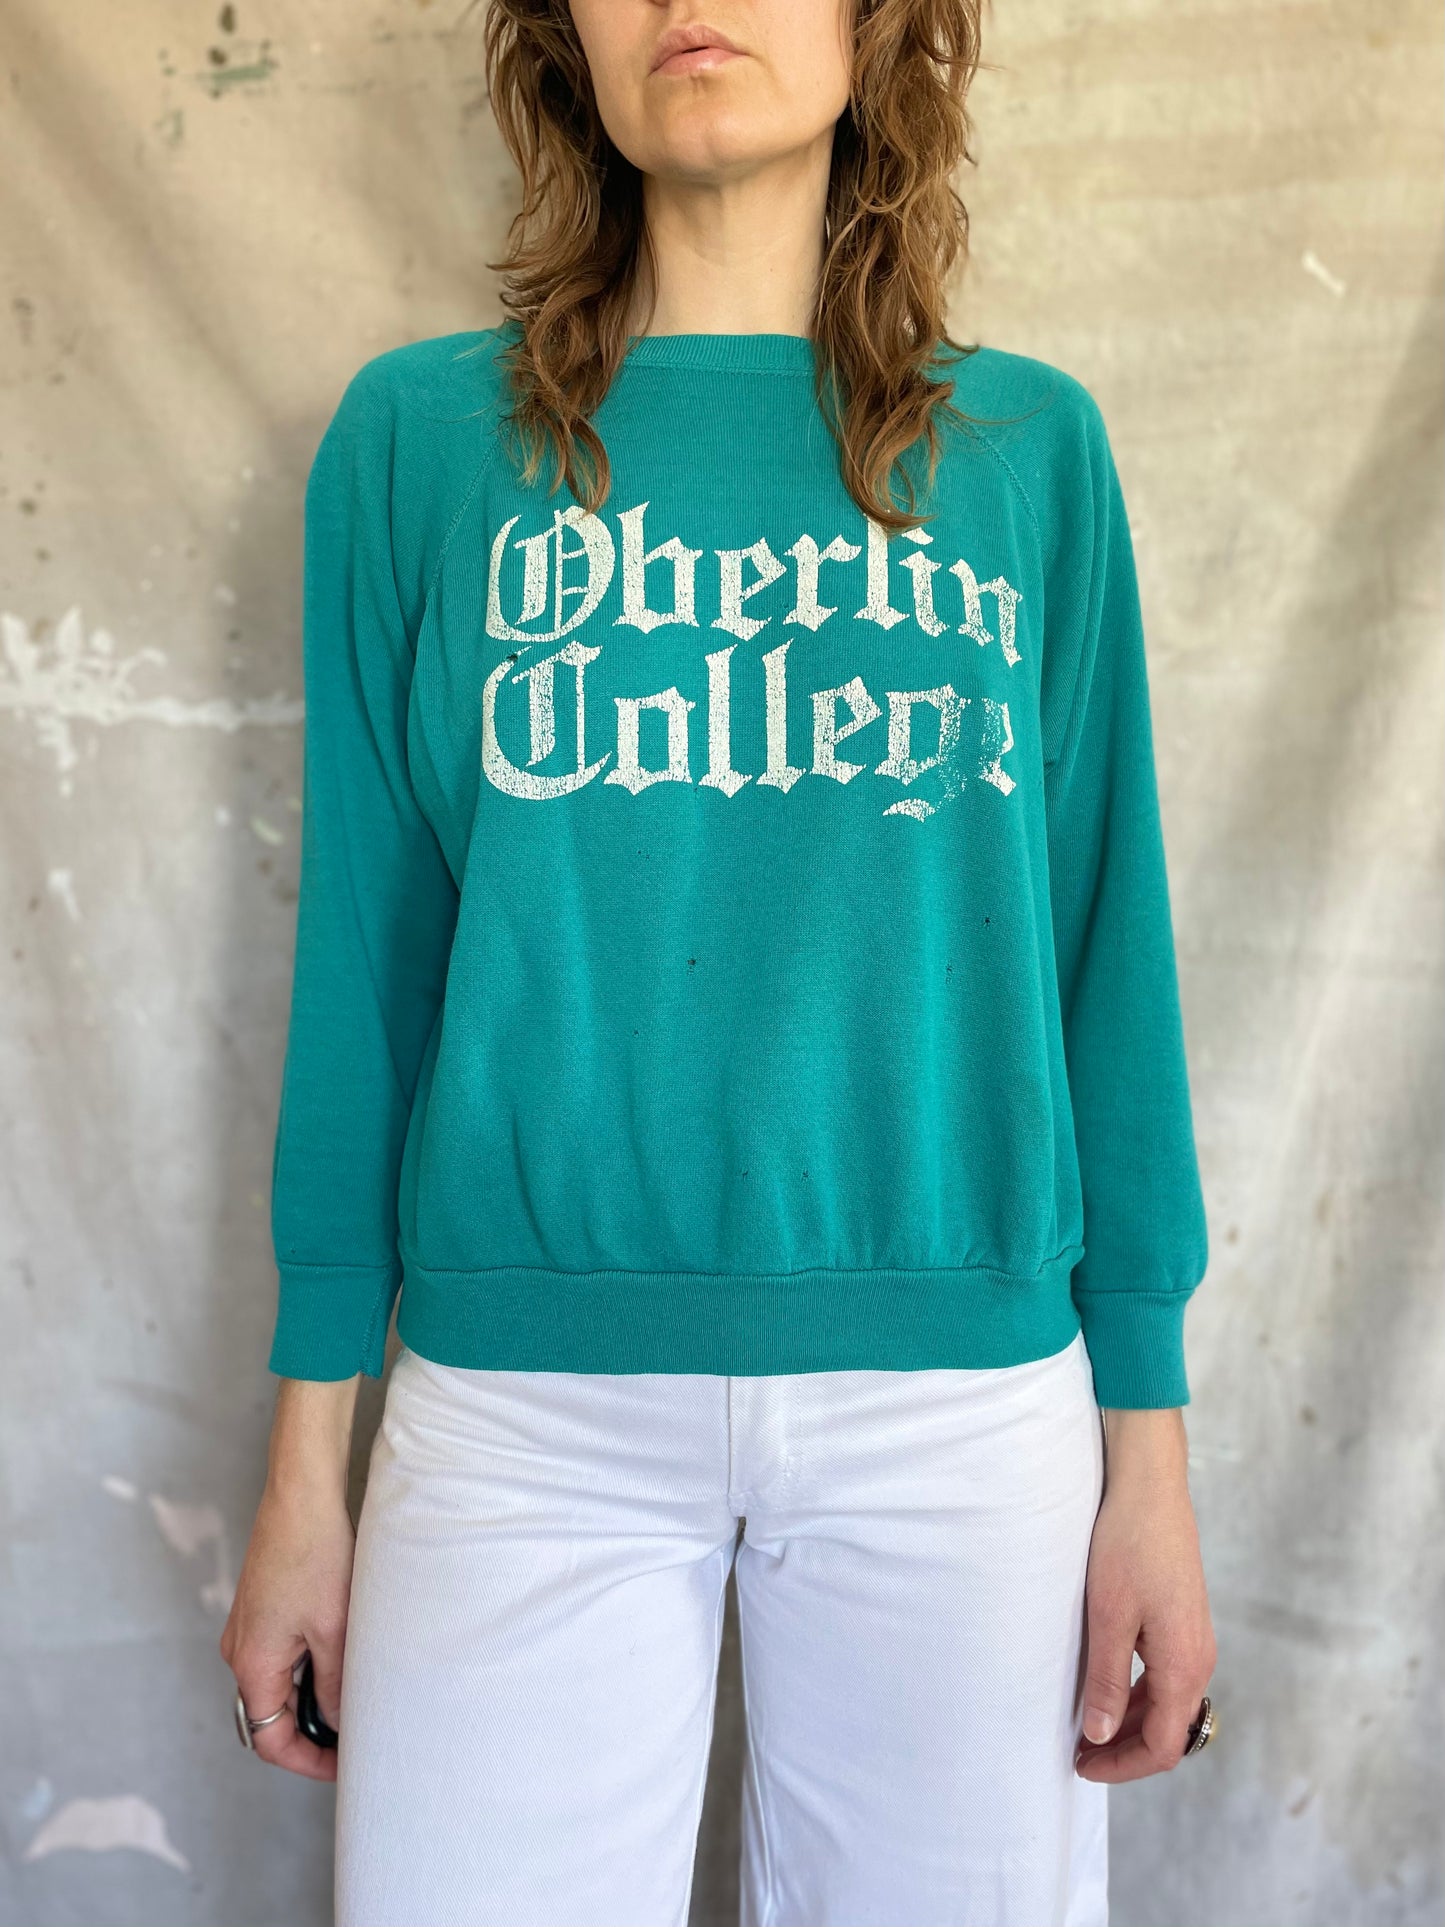 80s Oberlin College Ohio Sweatshirt